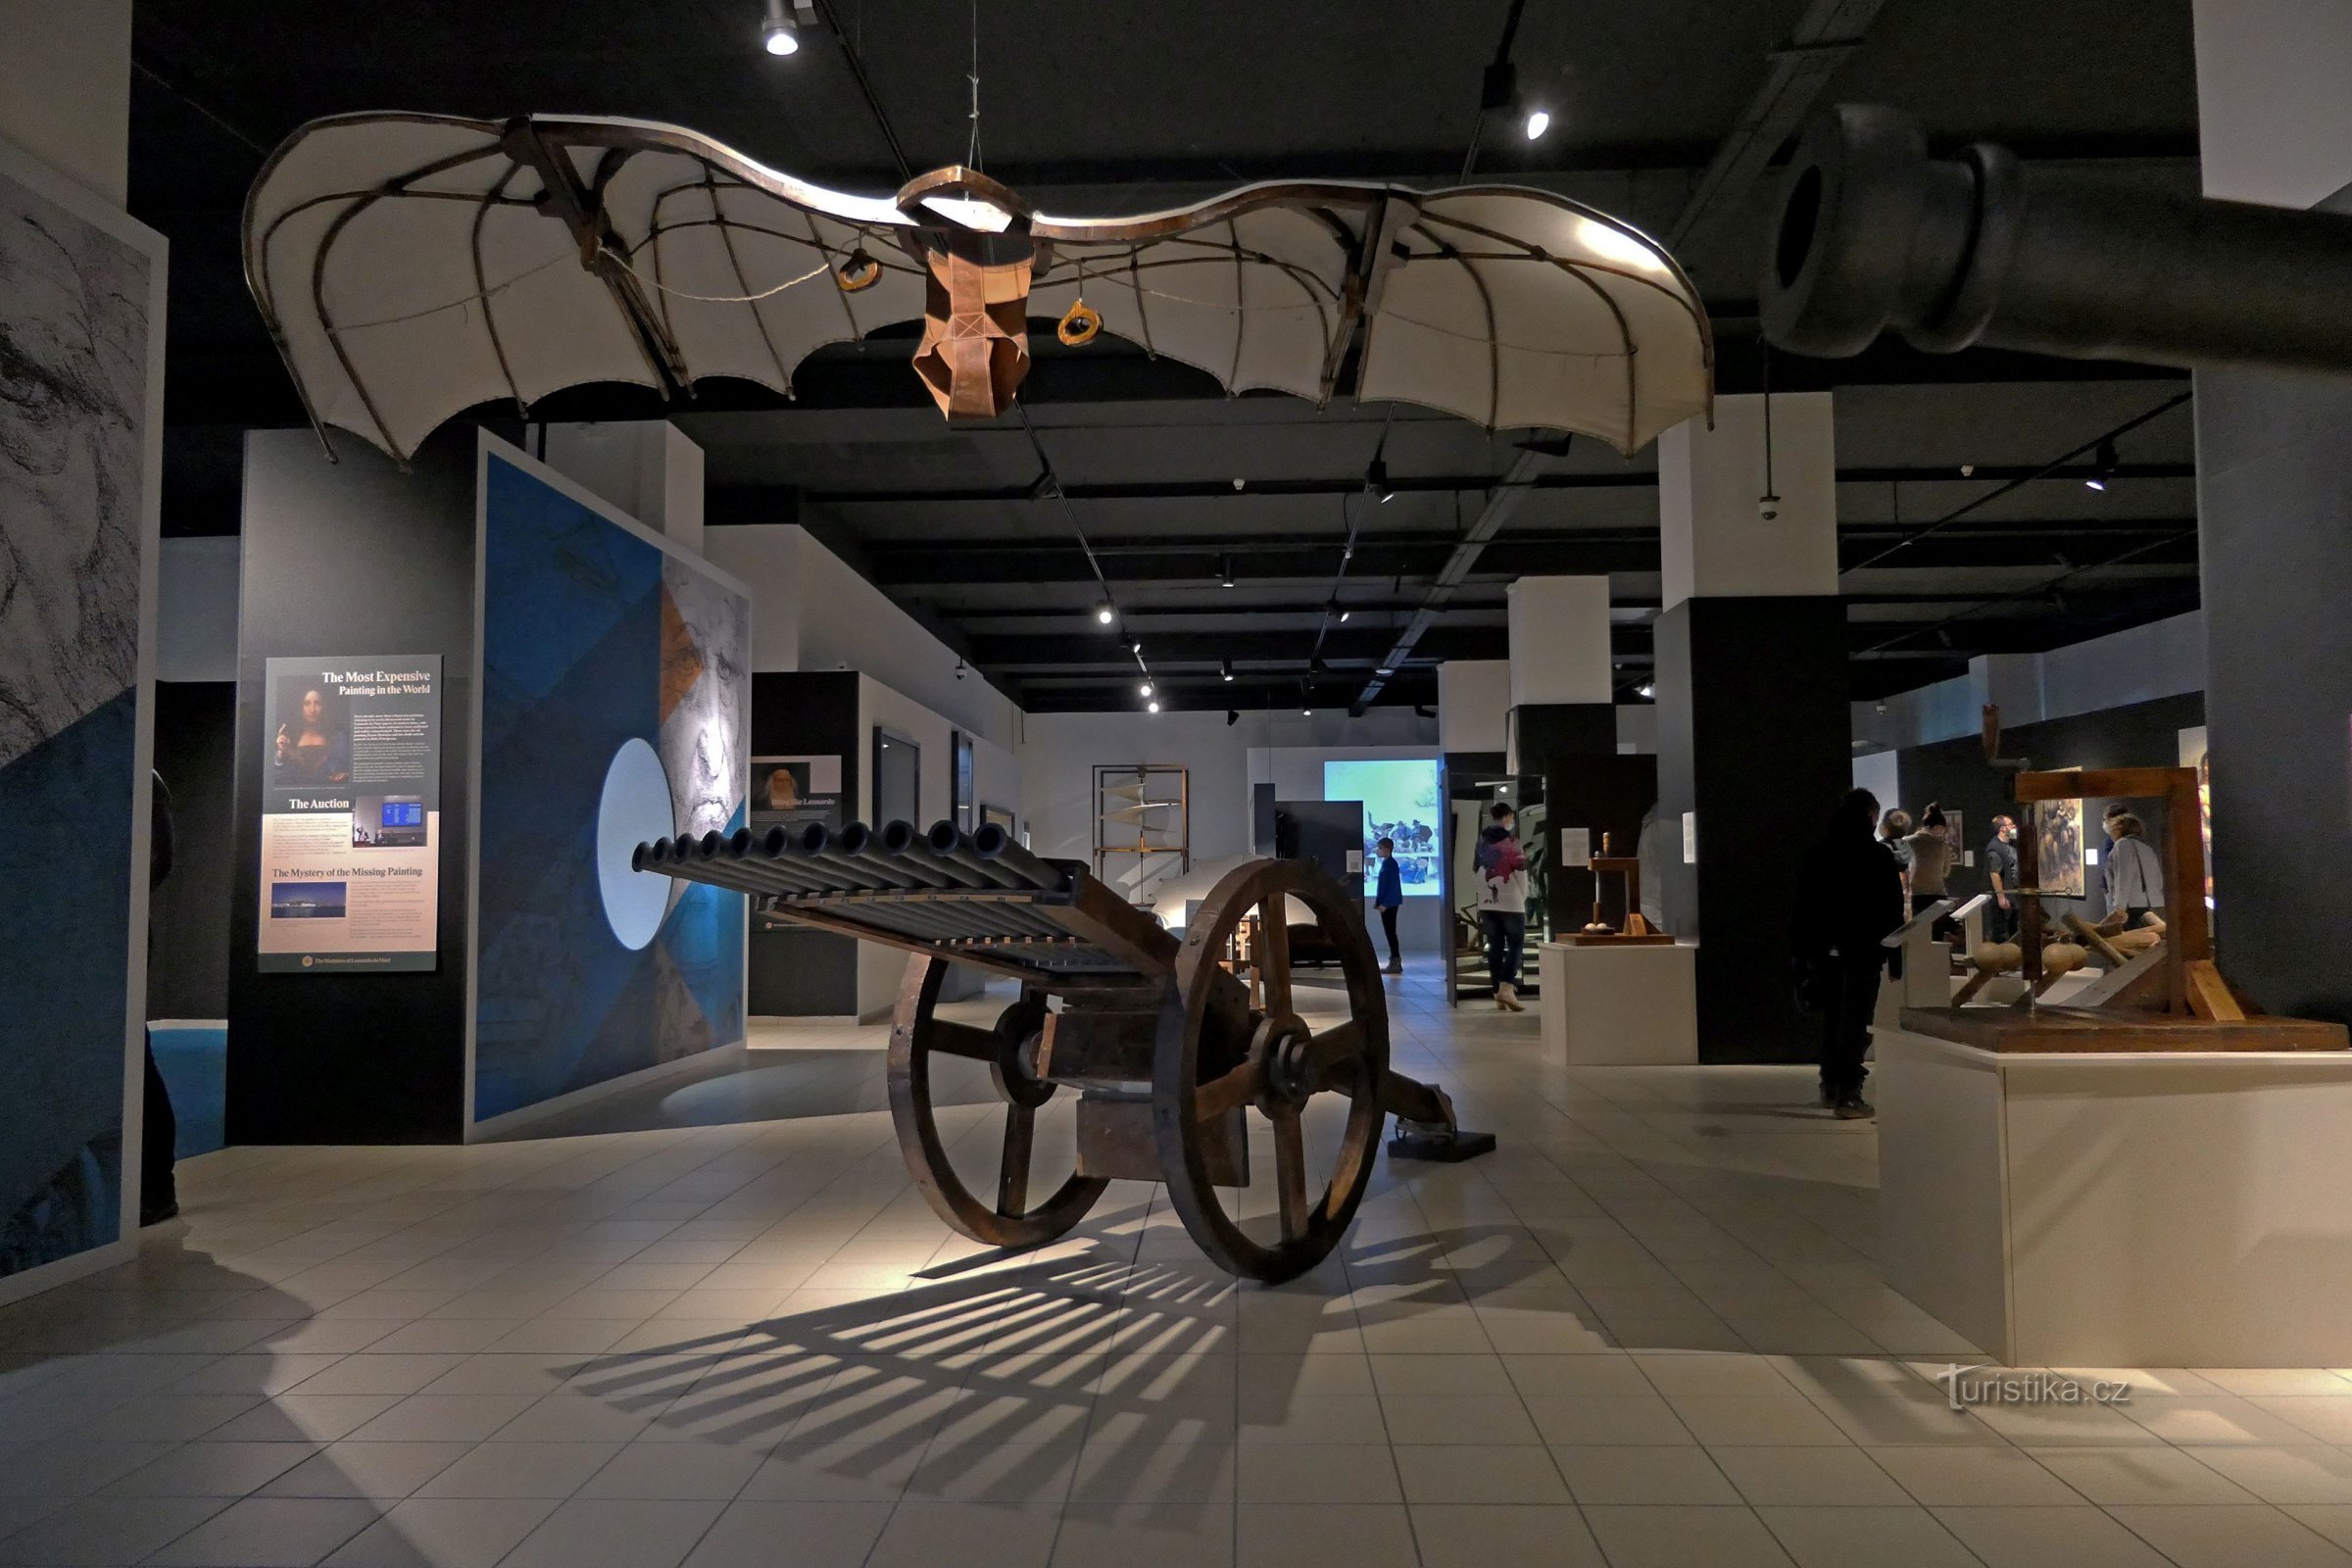 Đến Bảo tàng Kỹ thuật ở Brno để xem triển lãm Máy Leonardo da Vinci mới